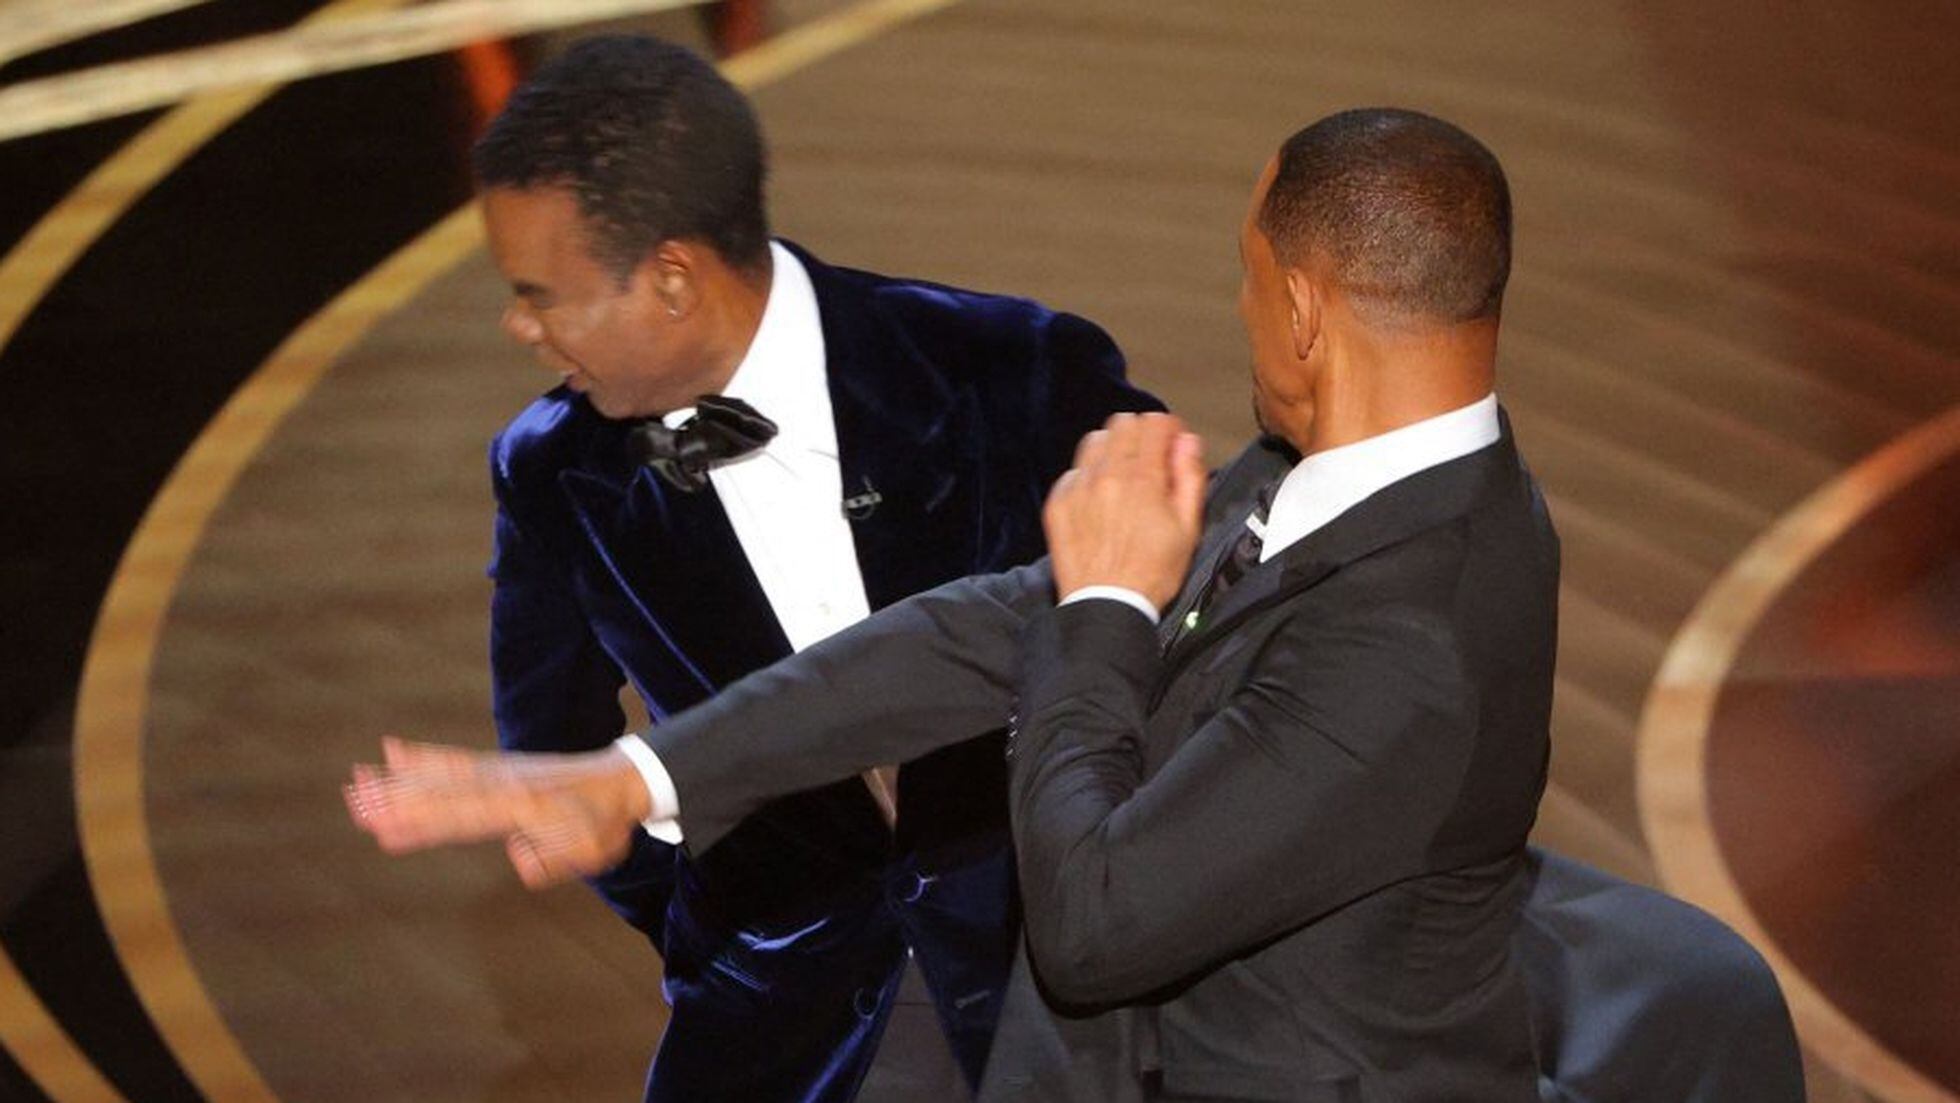 La bofetada de Will Smith a Chris Rock en los Oscar: las reacciones y la  secuencia completa del momento | Premios Oscar | Cine | EL PAÍS